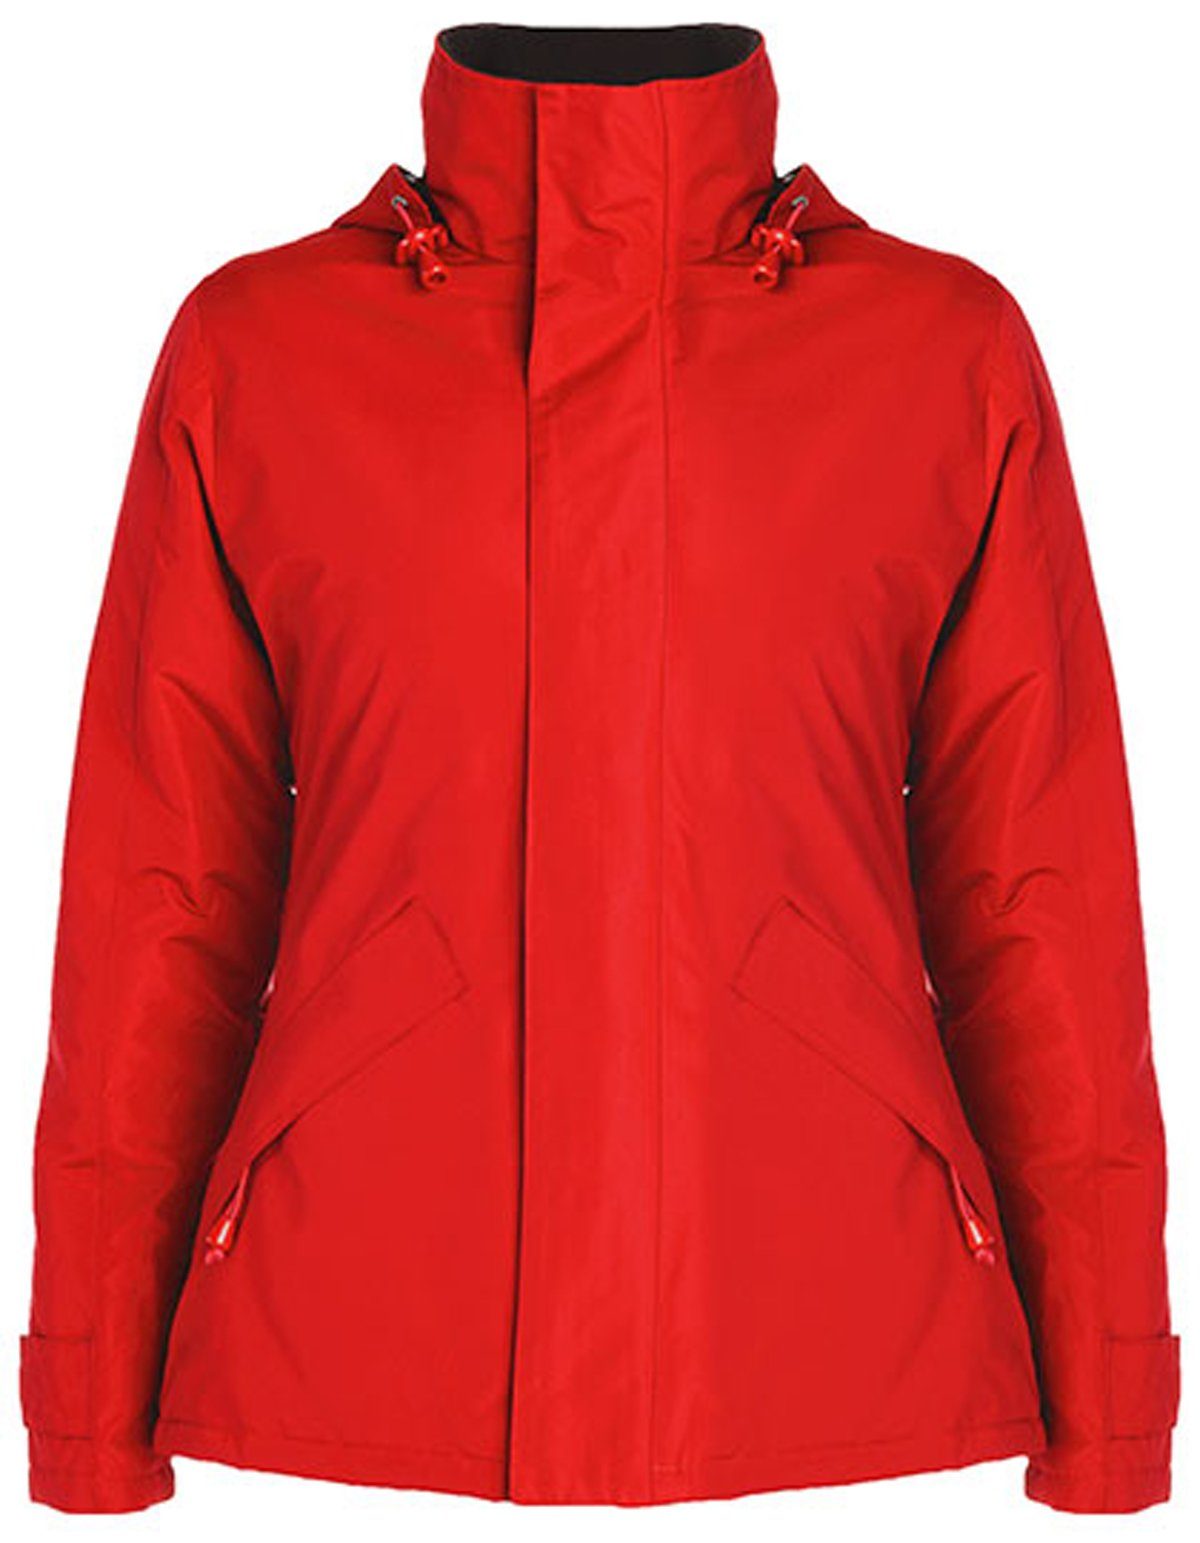 Einführung in beliebte Artikel Roly Outdoorjacke Europa Woman -RY5078- Jacke Red 60